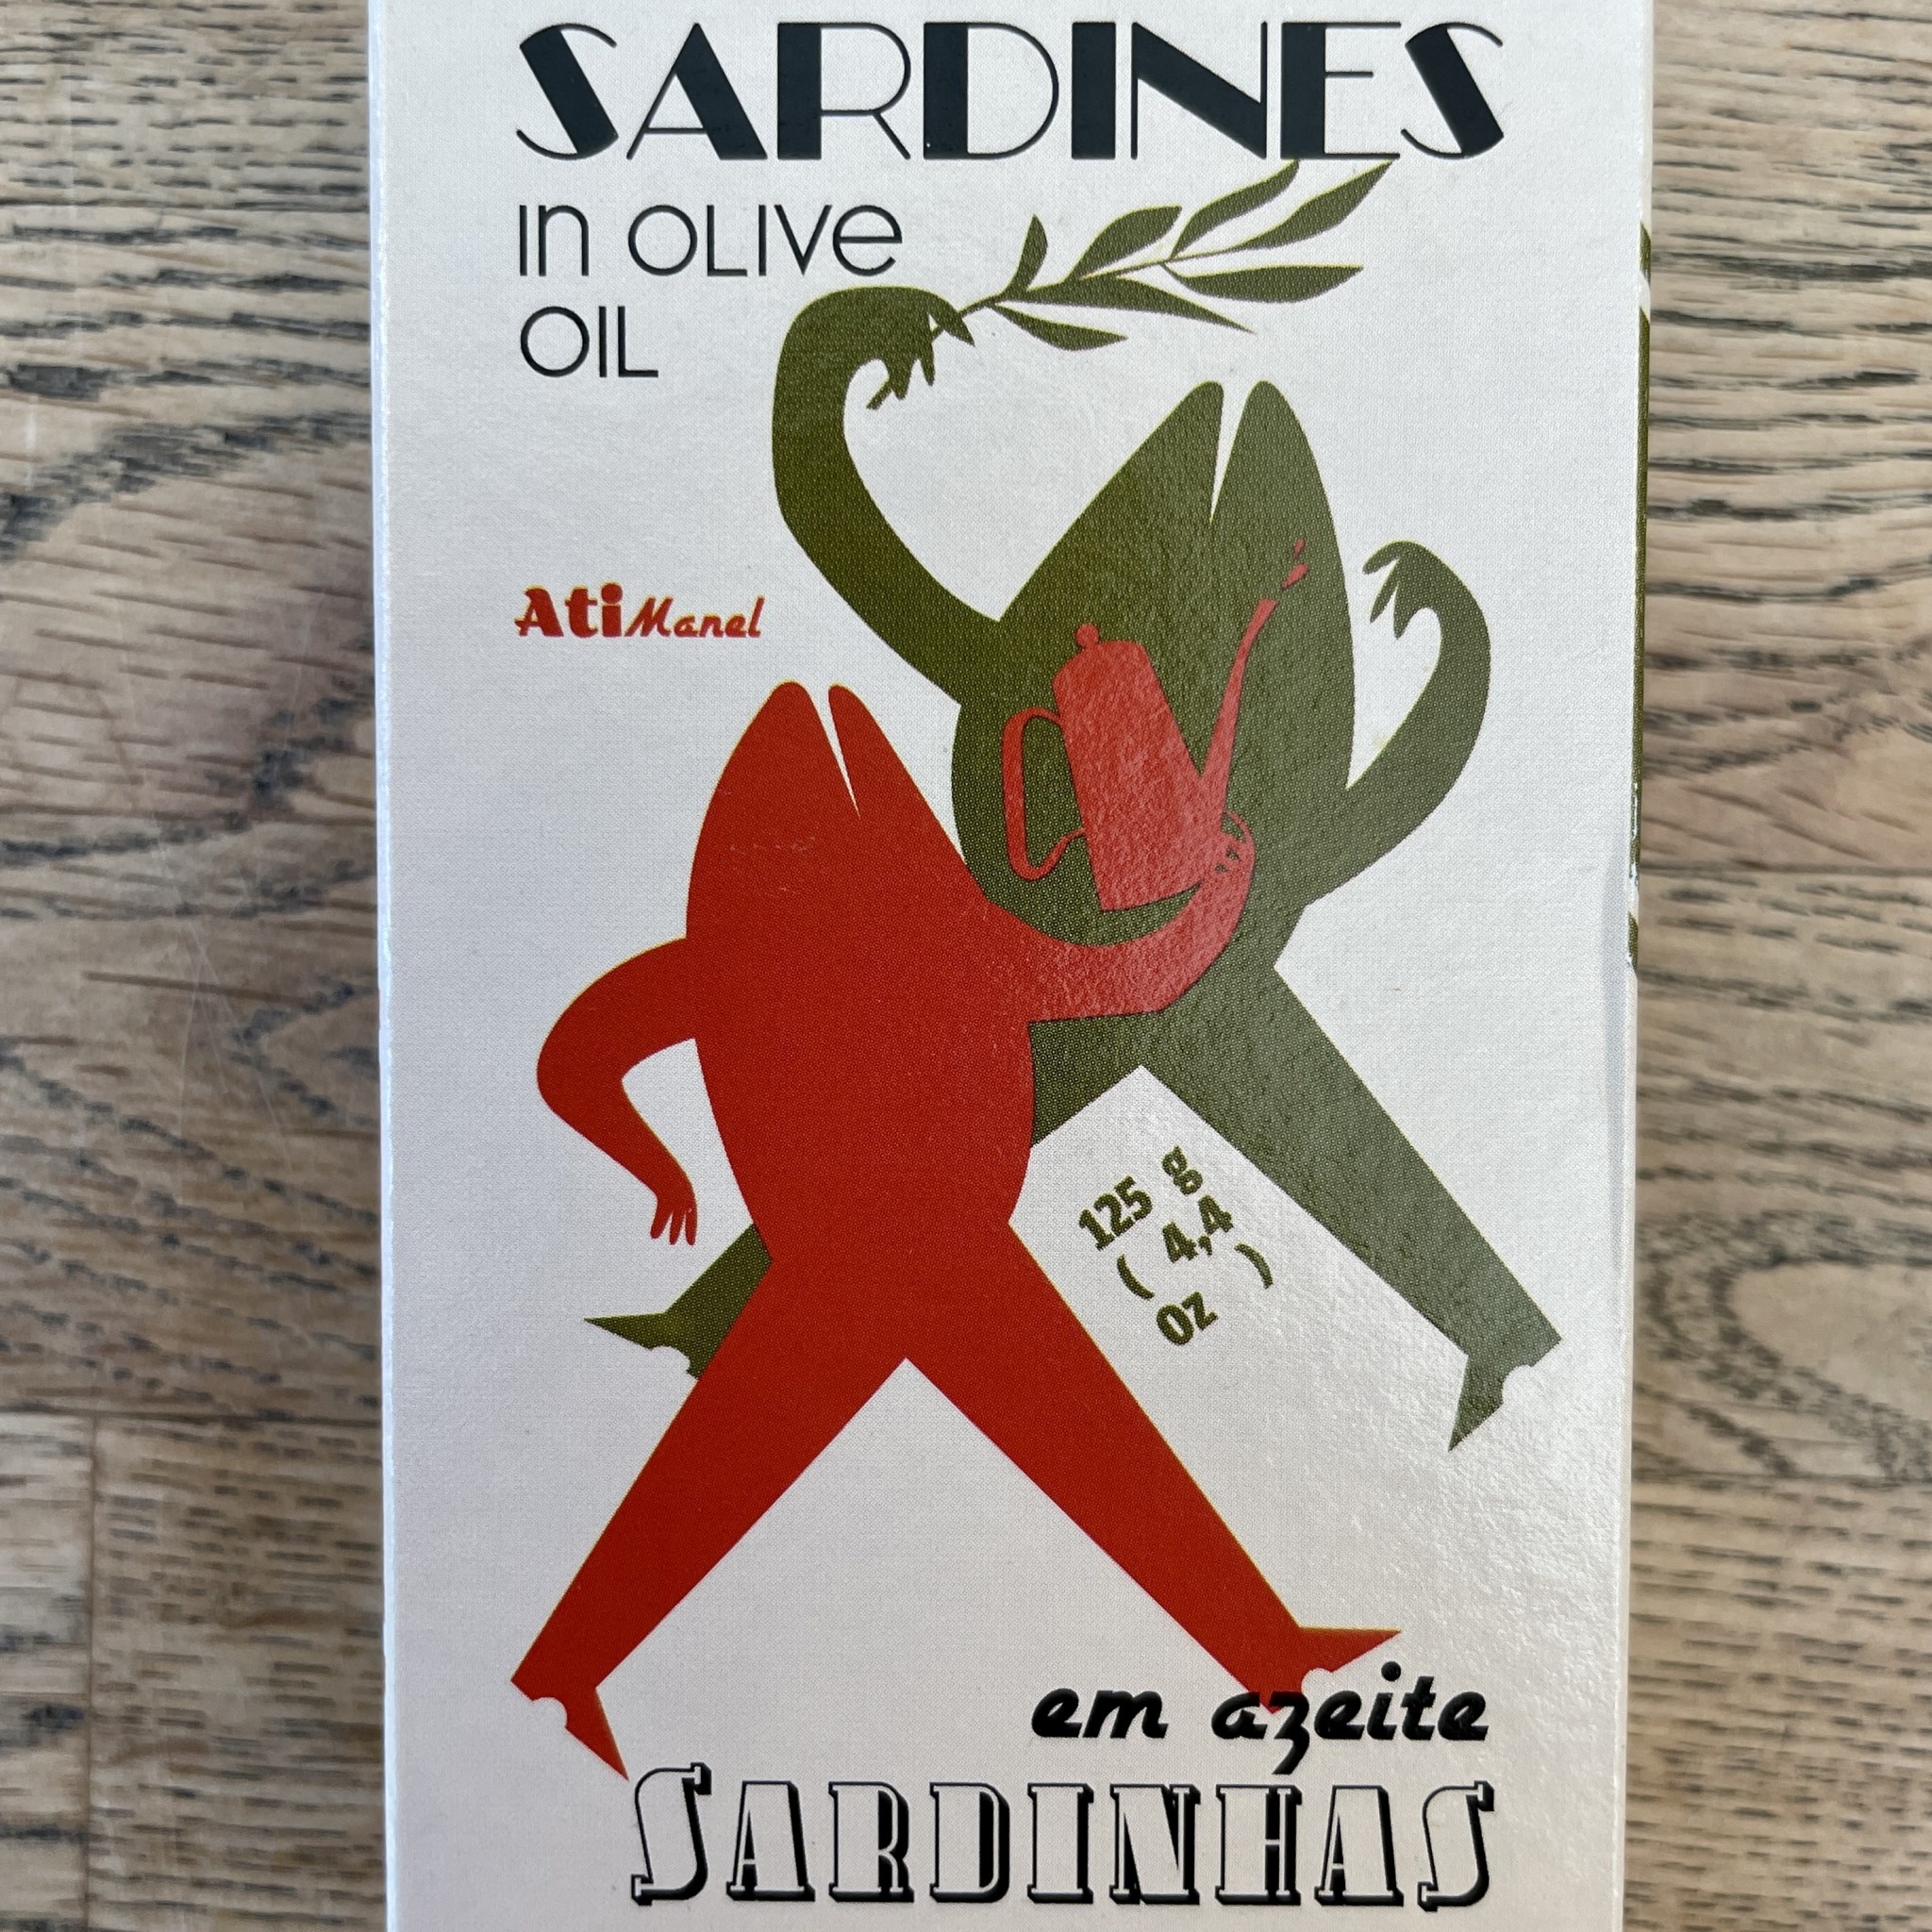 Portugal Ati Manel Sardines in Olive Oil 125g